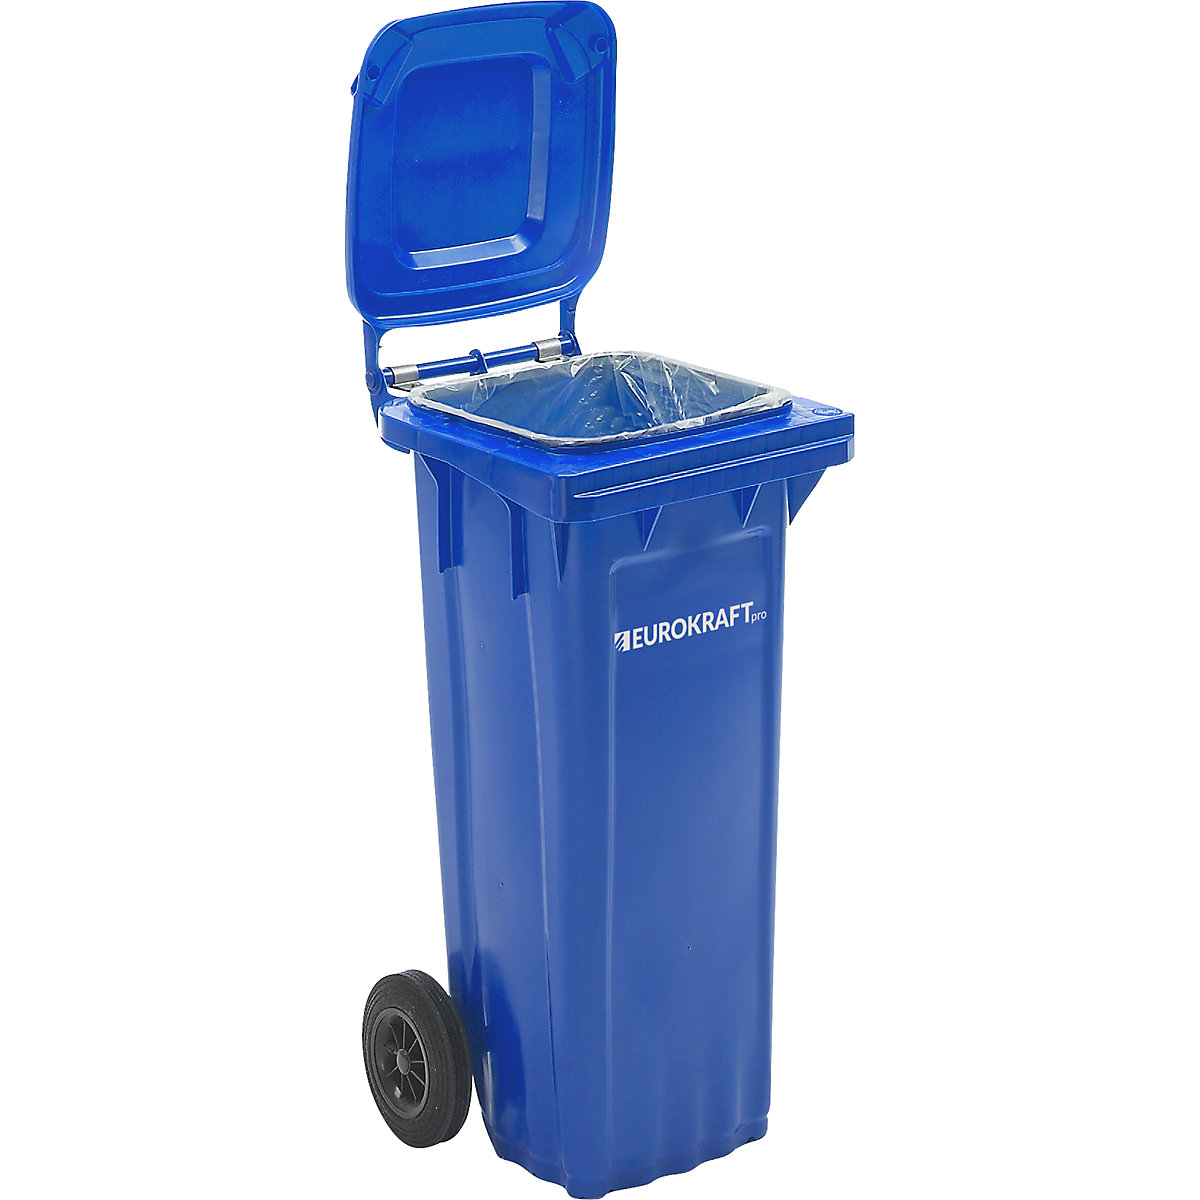 Contentor de lixo em plástico DIN EN 840 – eurokraft pro, volume 80 l, LxAxP 448 x 932 x 514 mm, azul, a partir de 5 unid.-10